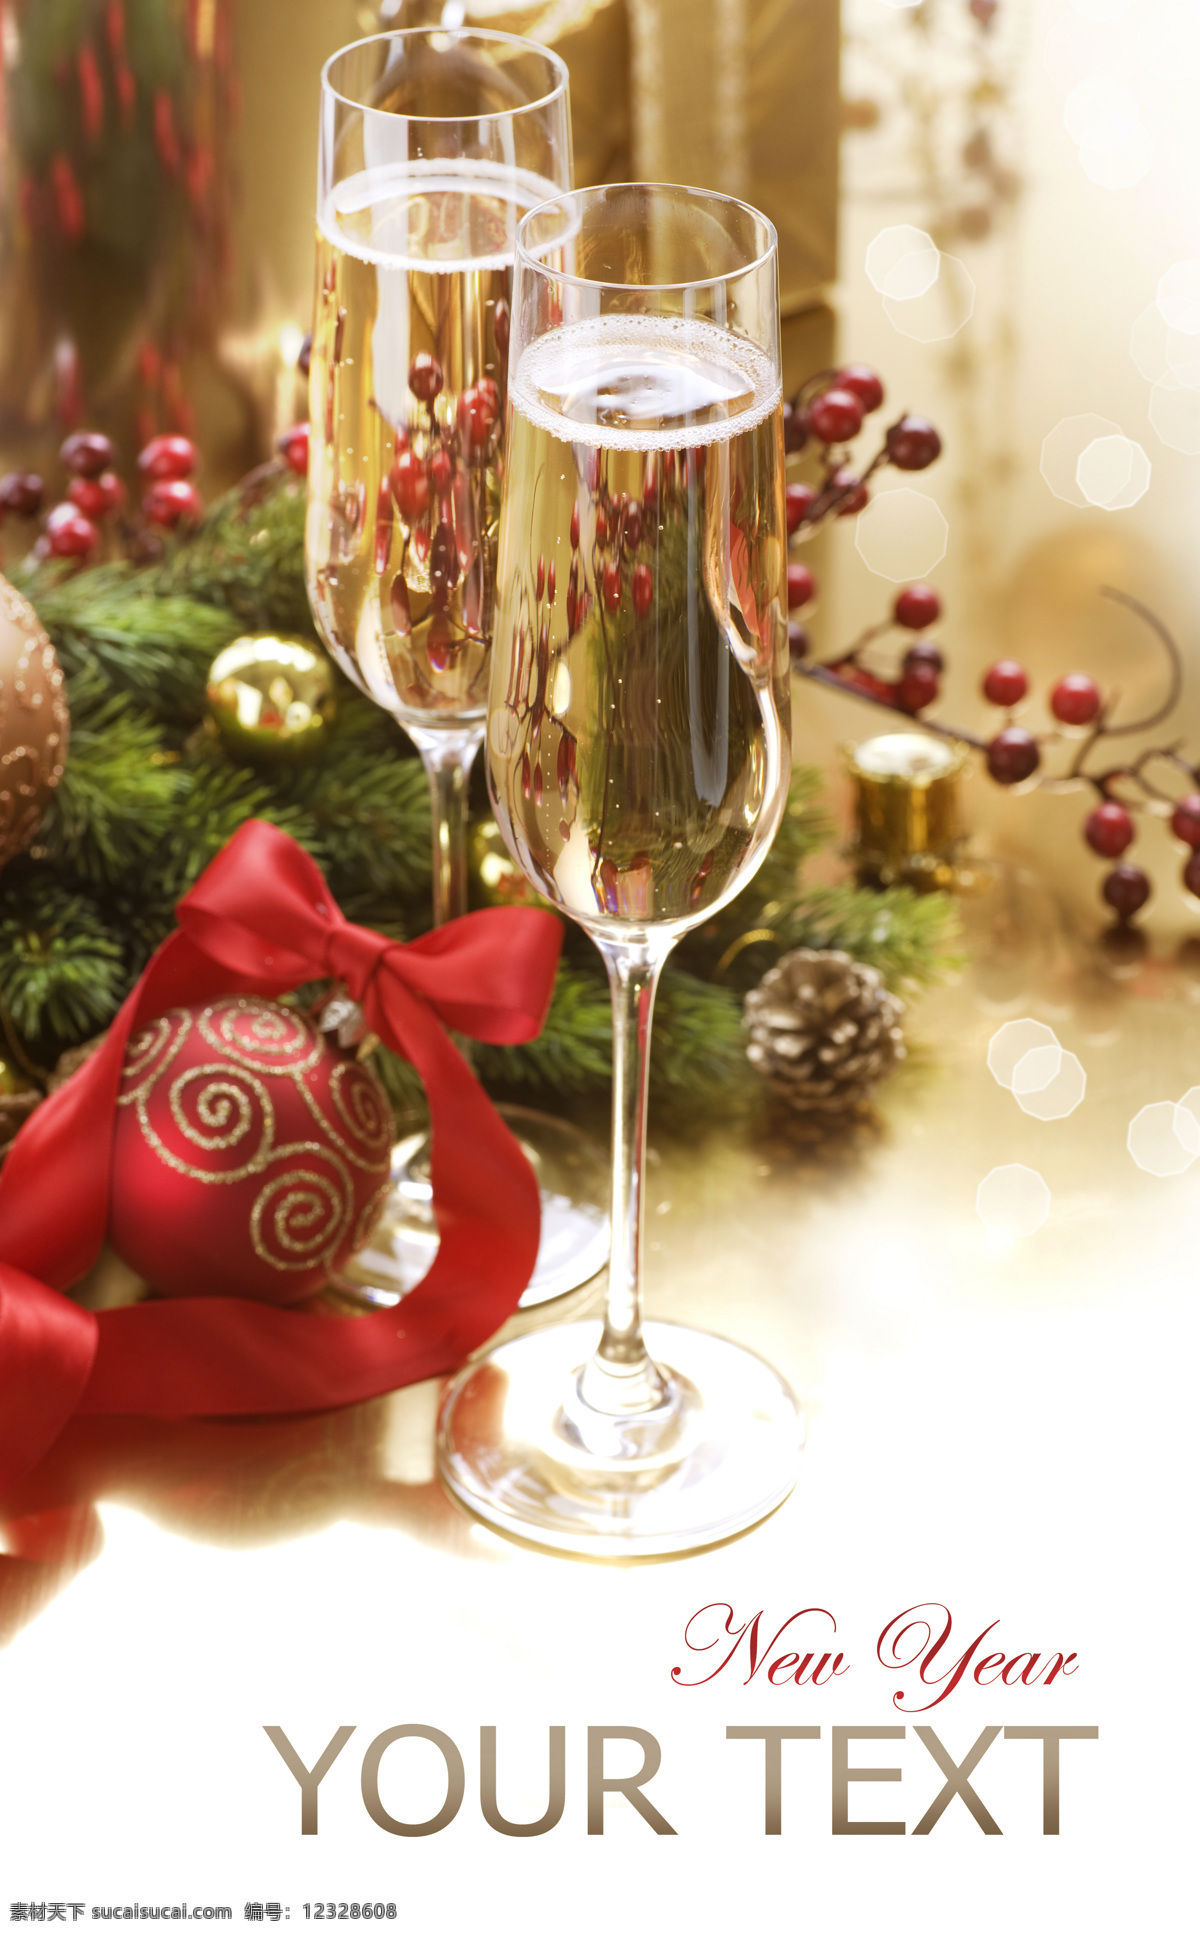 圣诞 彩球 香槟 节日 圣诞节 梦幻 唯美 圣诞节素材 酒杯 高脚杯 玻璃杯 丝带 松枝 酒水饮料 餐饮美食 白色